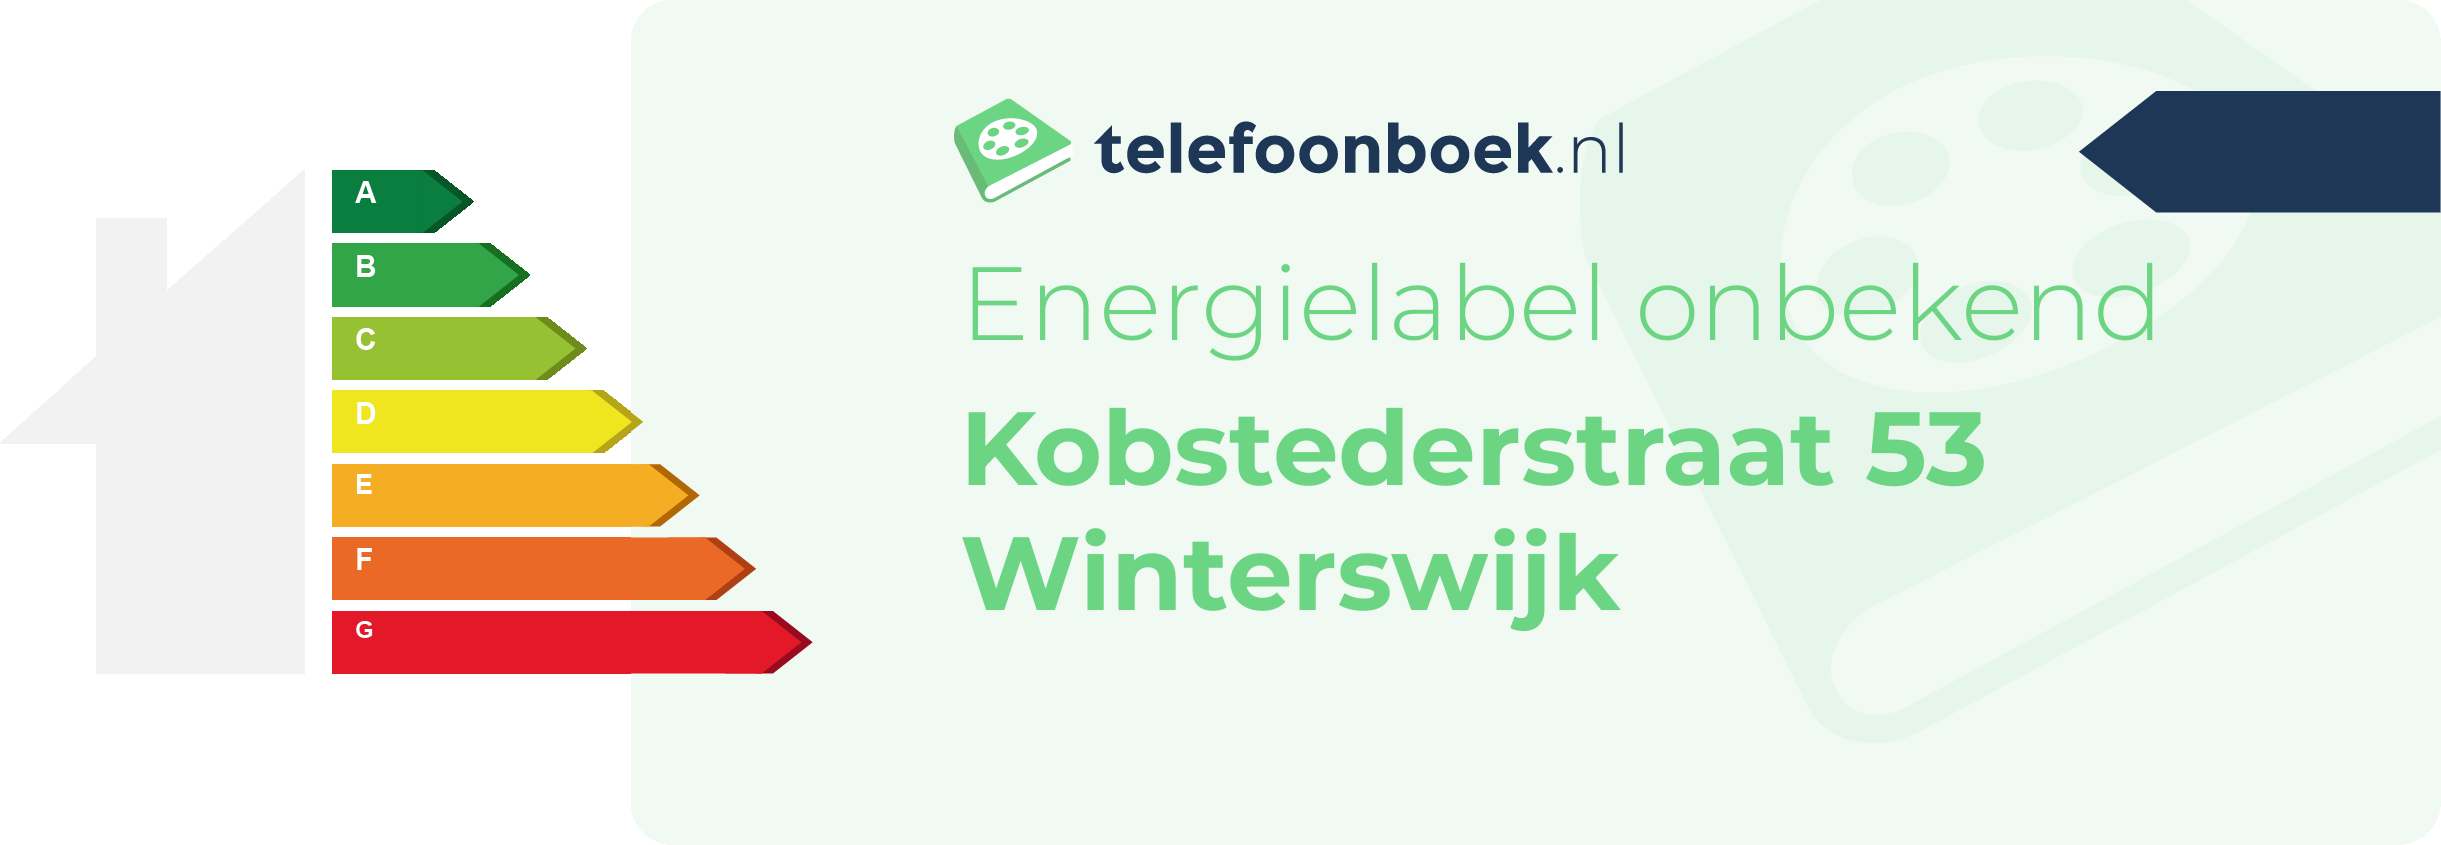 Energielabel Kobstederstraat 53 Winterswijk